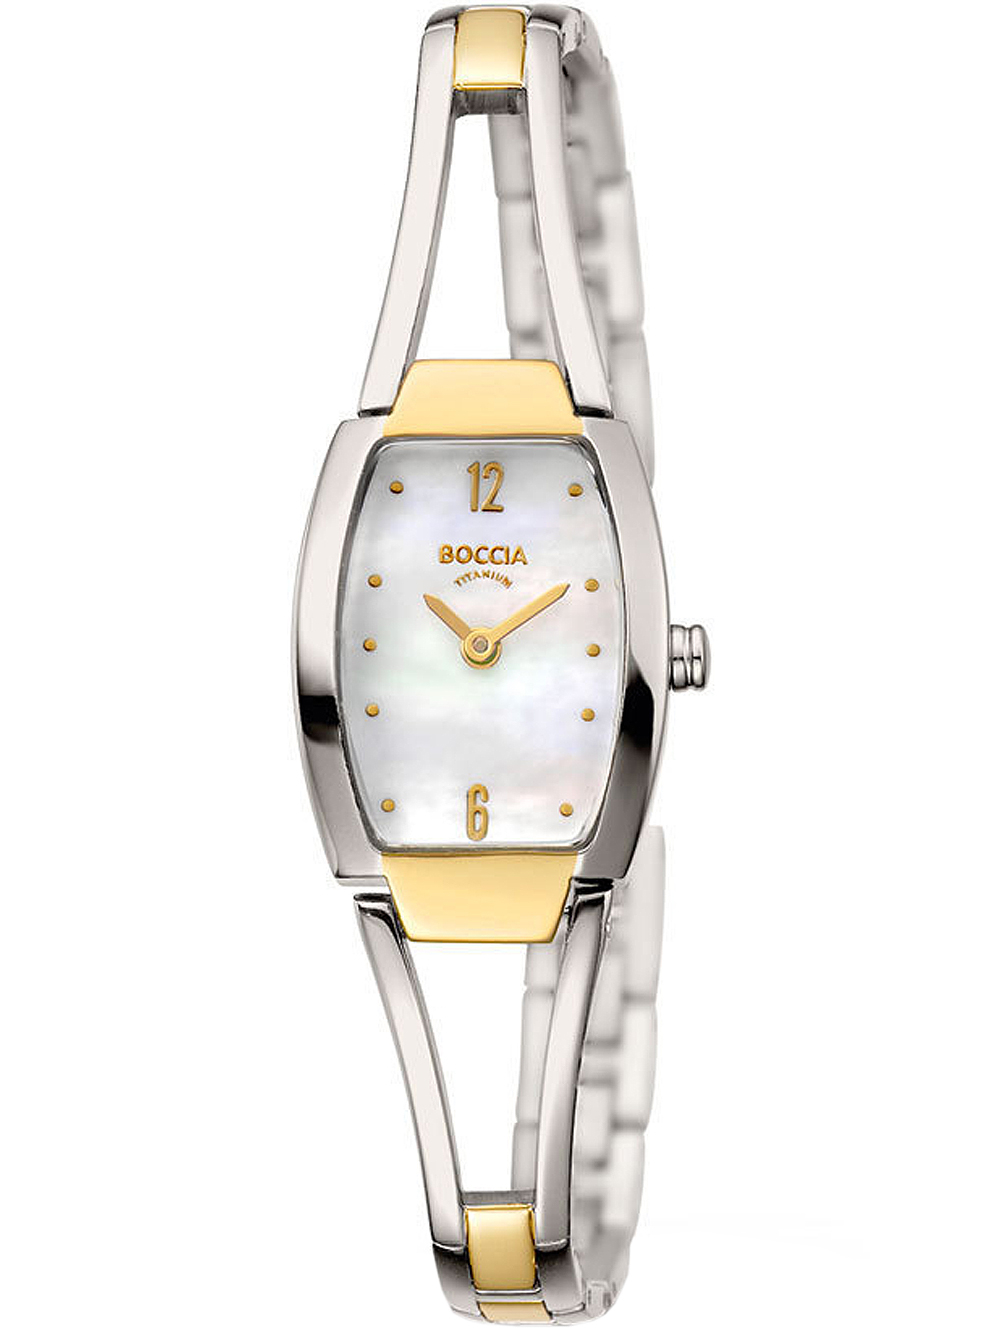 Dámské hodinky Boccia 3262-02 ladies watch titanium 20mm 5ATM